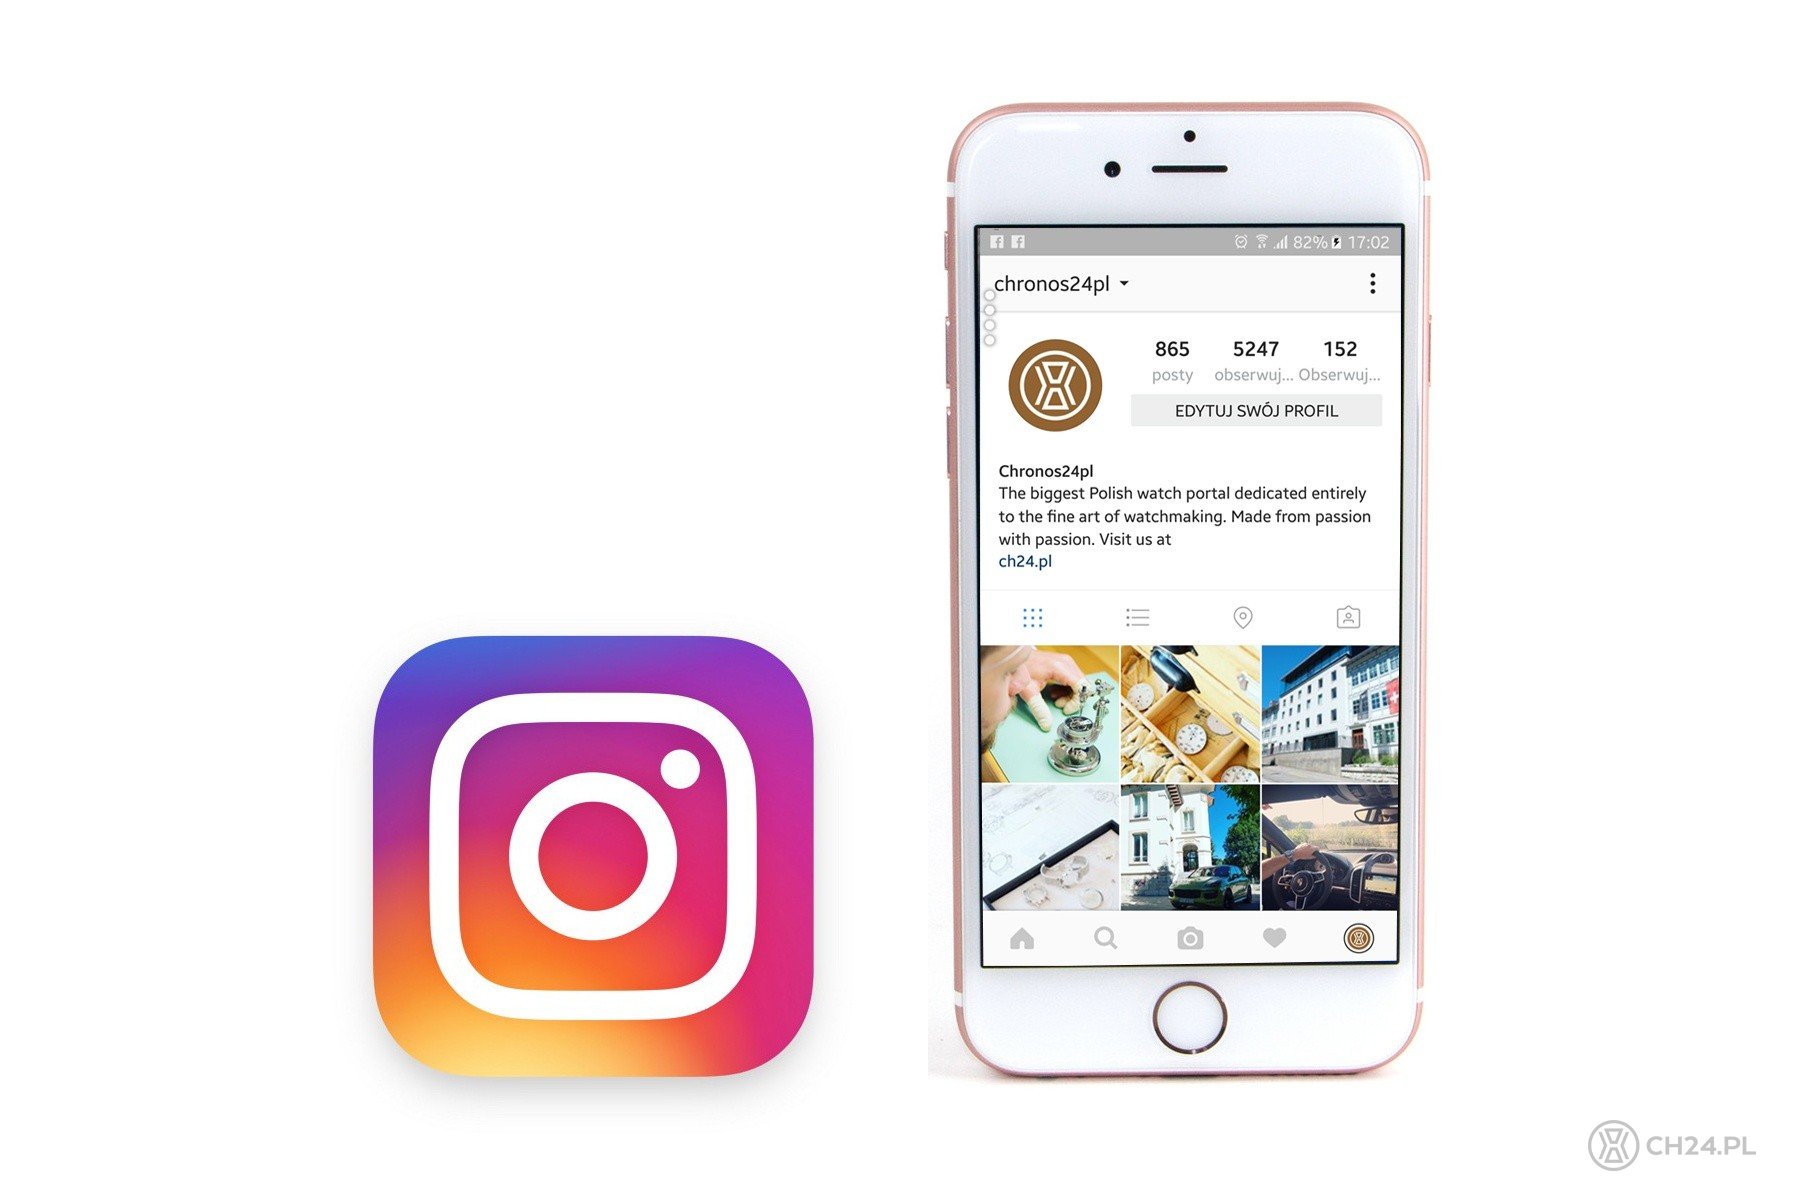 10 zegarkowych kont na Instagramie, które śledzić trzeba